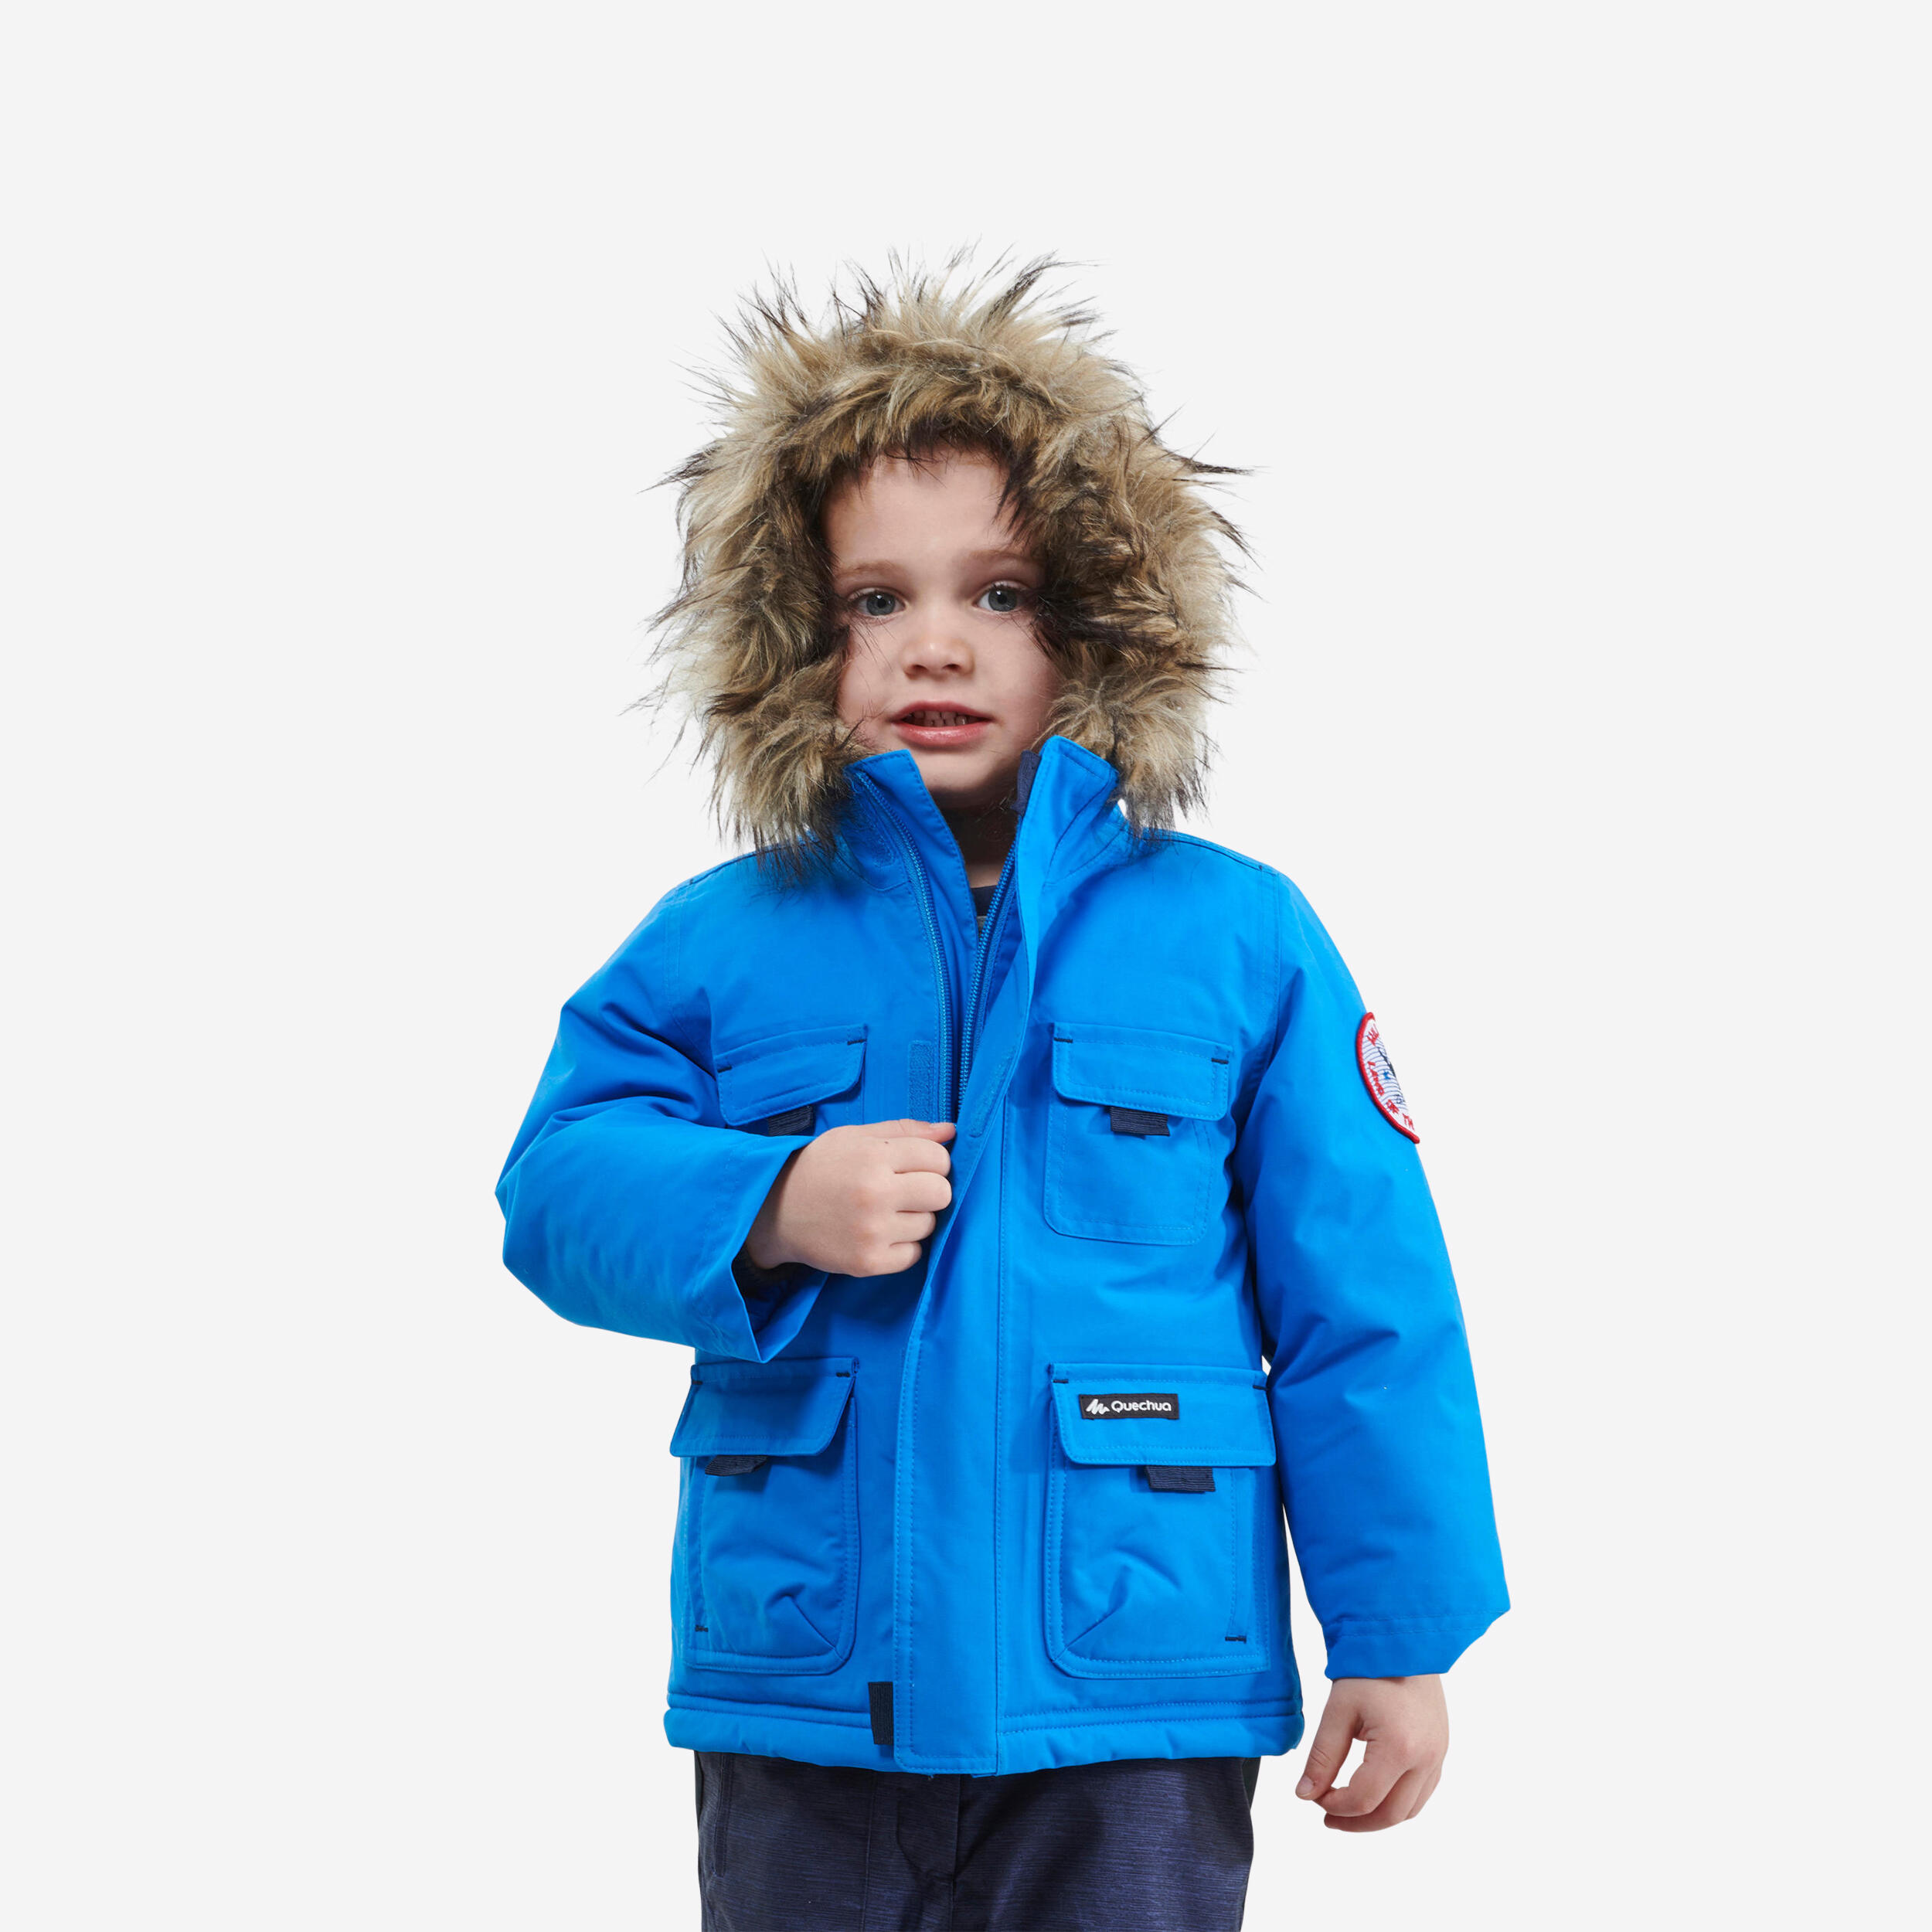 Kids’ Winter Waterproof Hiking Parka SH500 Ultra-Warm 2-6 Years 1/9